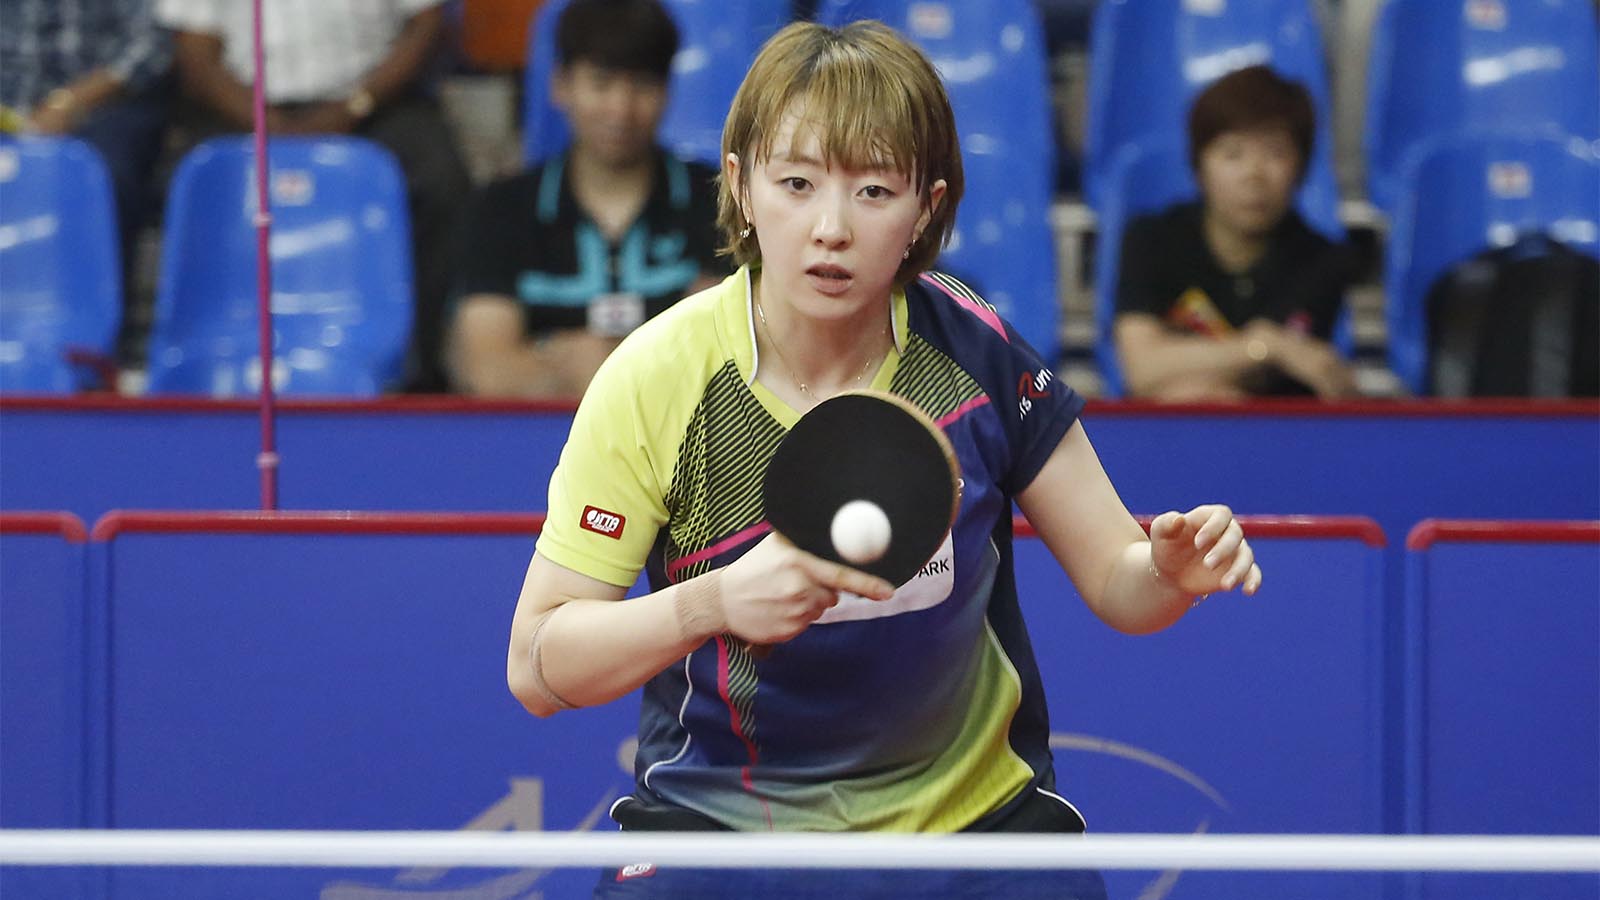 שחקנית נבחרת קוריאה בטניס שולחן סו היו-וון בגביע אסיה. ספטמבר 2017 (AP Photo/Ajit Solanki)